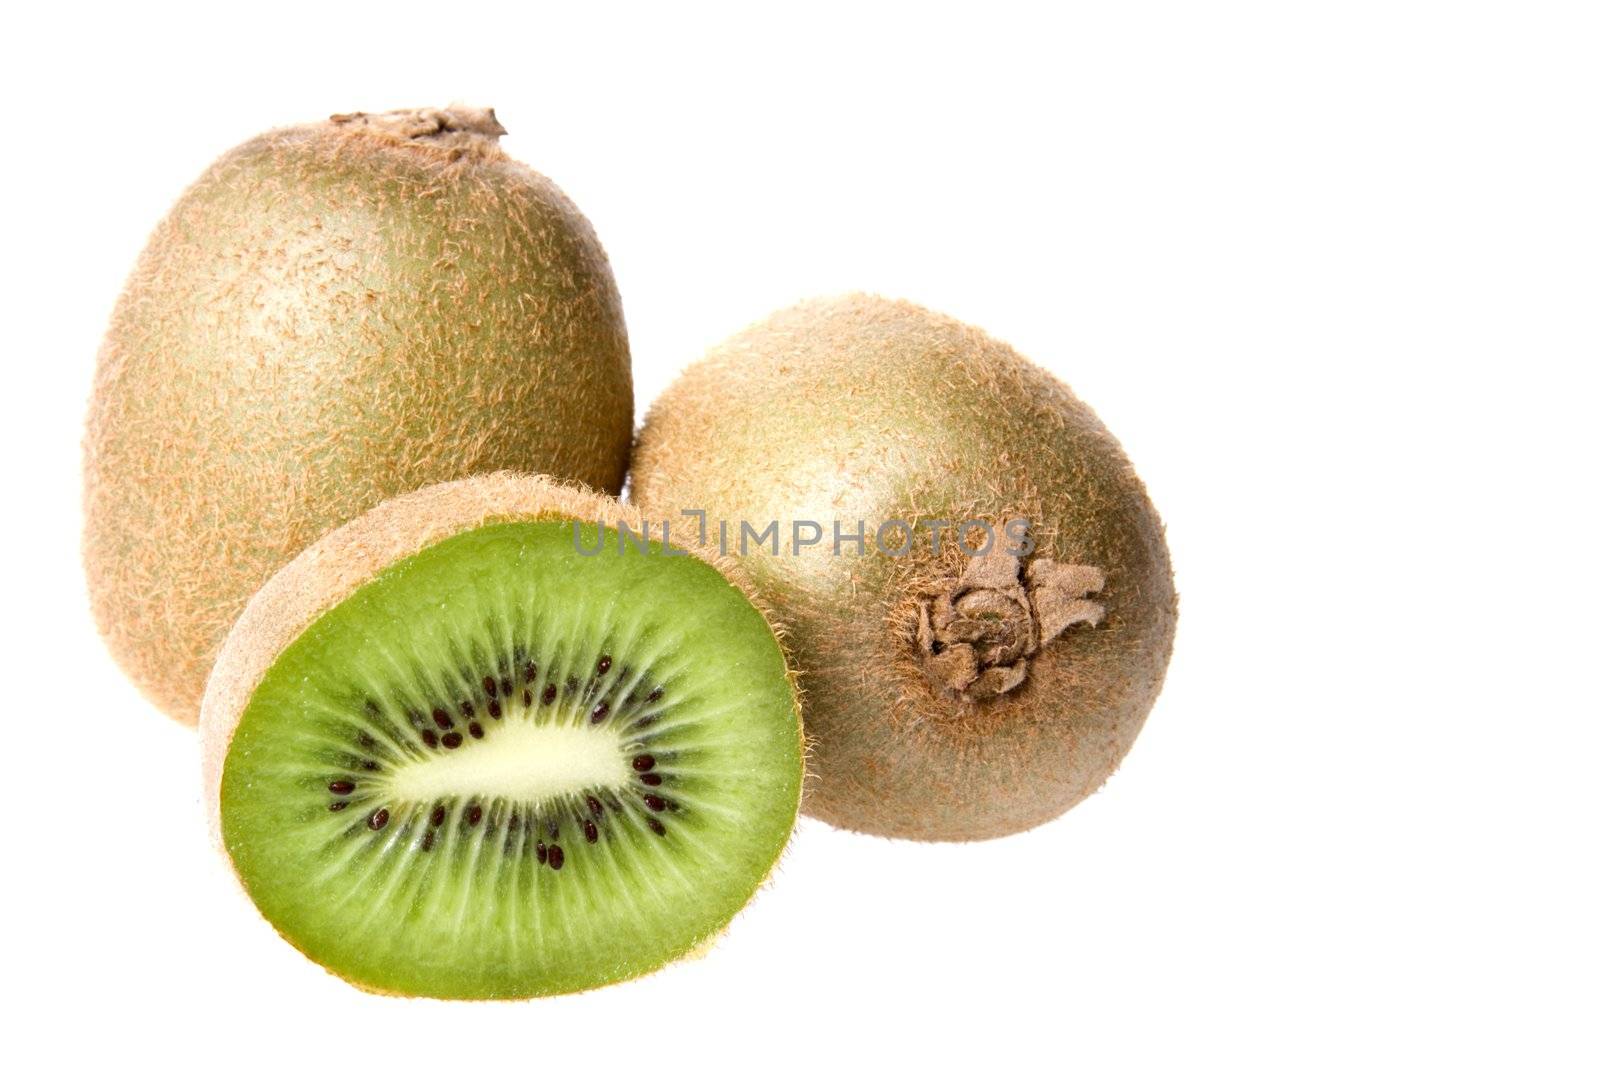 Kiwi Fruits Close-up by shariffc